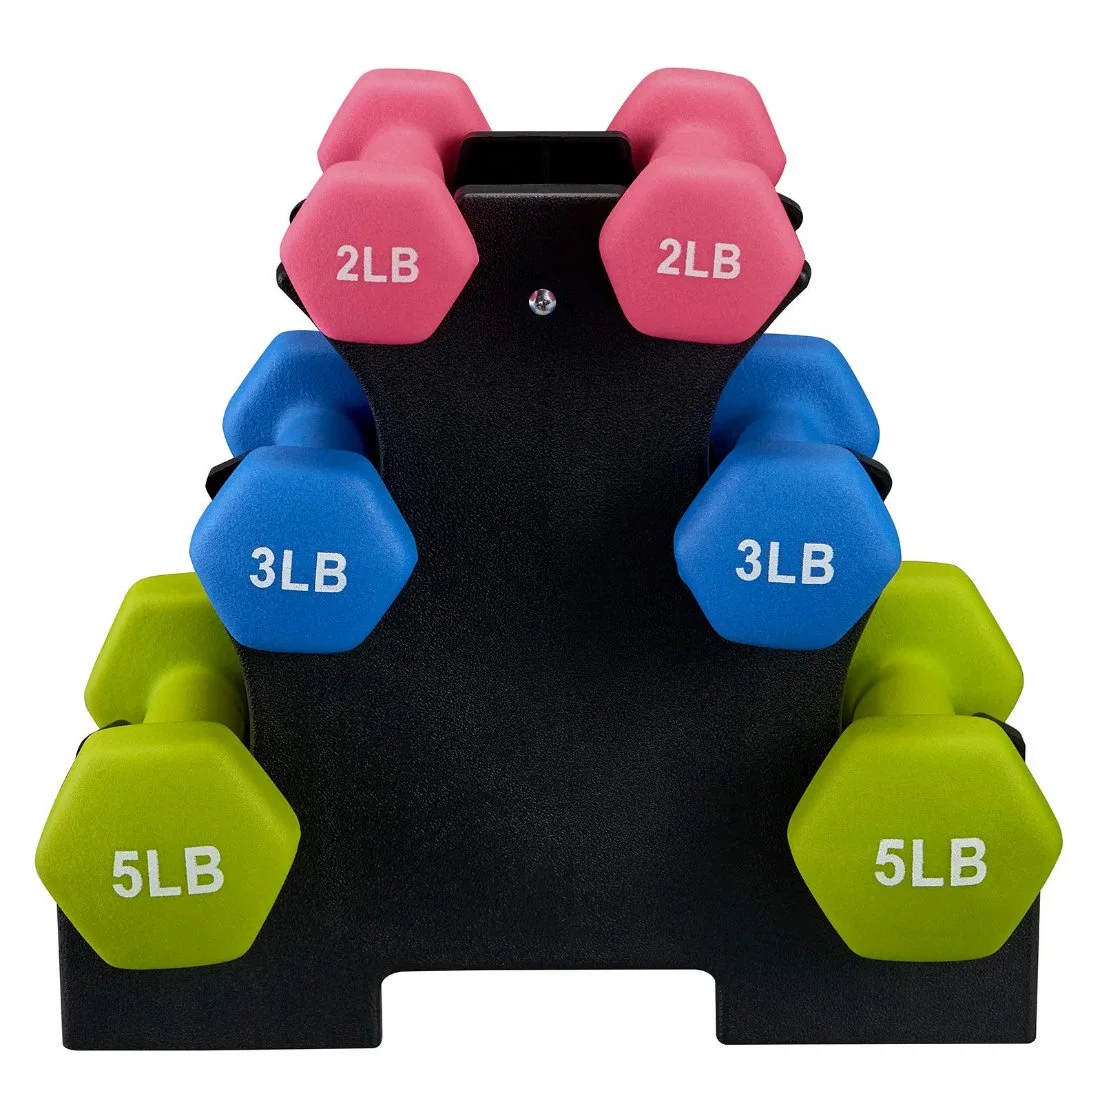 9 Kg Dumbbell Price Portable Colorful Rubber Hex Dumbbells Gym Fitness Neoprene Dumbbell Sets